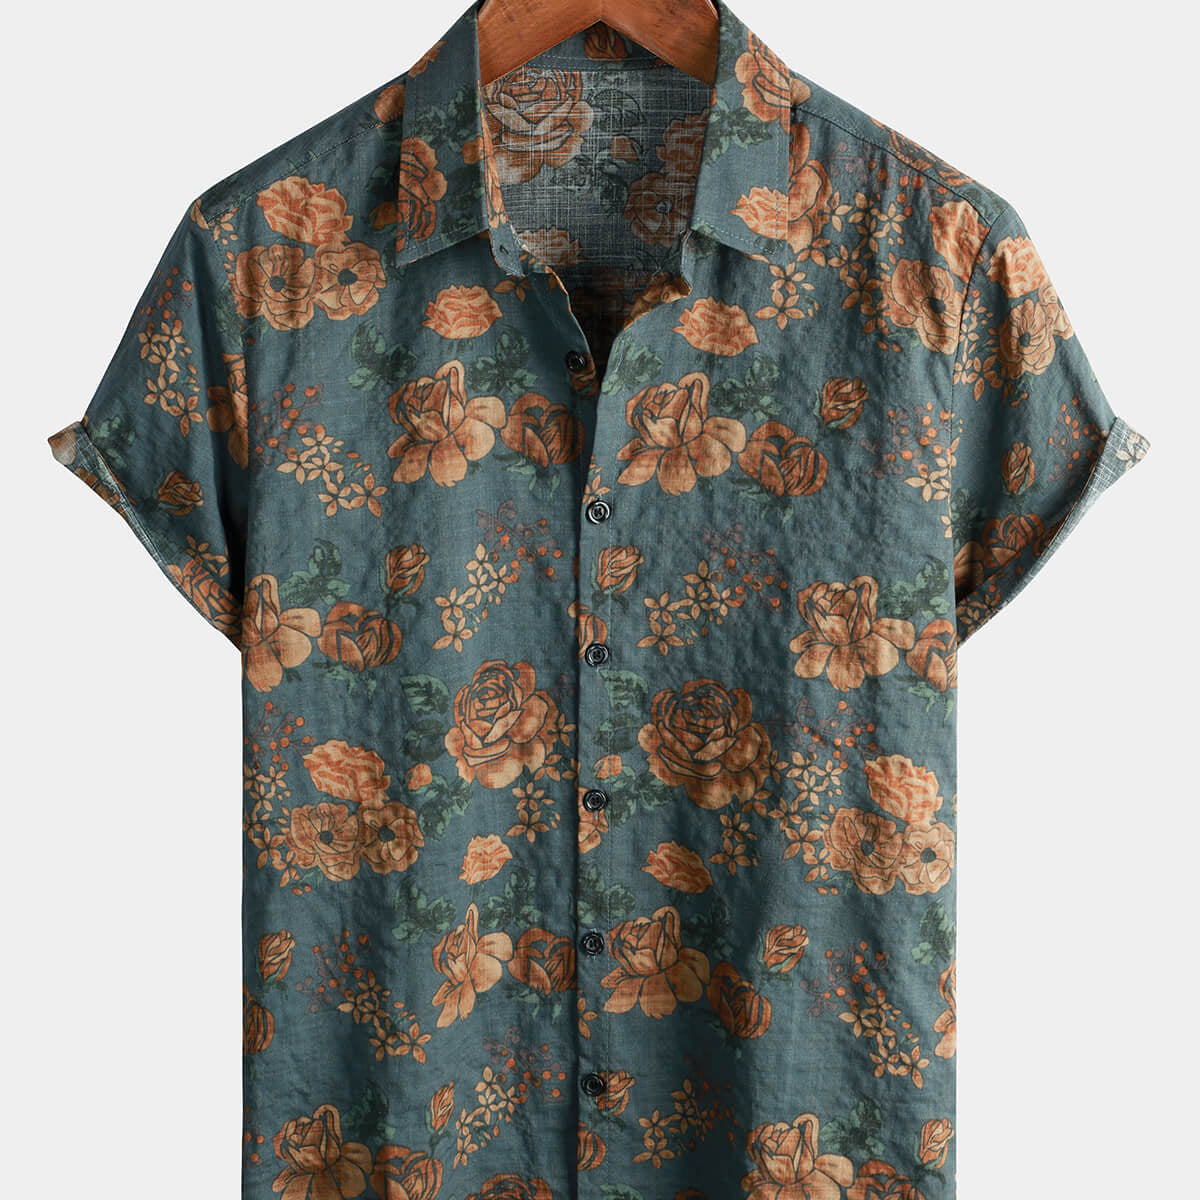 Camisa de manga corta para hombre, estilo vintage, floral, retro, con botones, azul, para vacaciones de verano